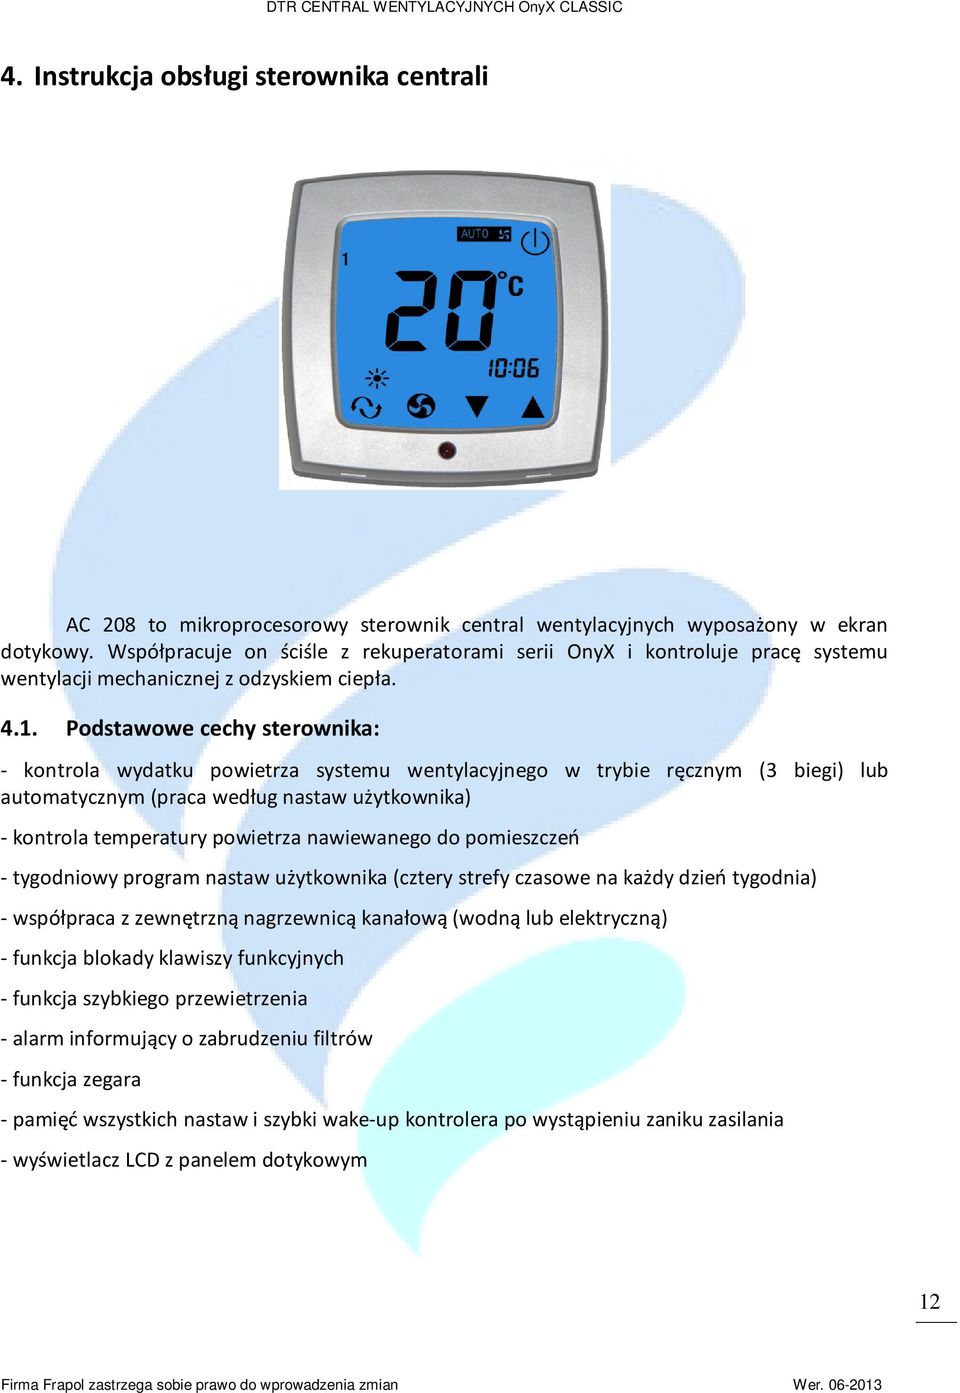 Podstawowe cechy sterownika: - kontrola wydatku powietrza systemu wentylacyjnego w trybie ręcznym (3 biegi) lub automatycznym (praca według nastaw użytkownika) - kontrola temperatury powietrza